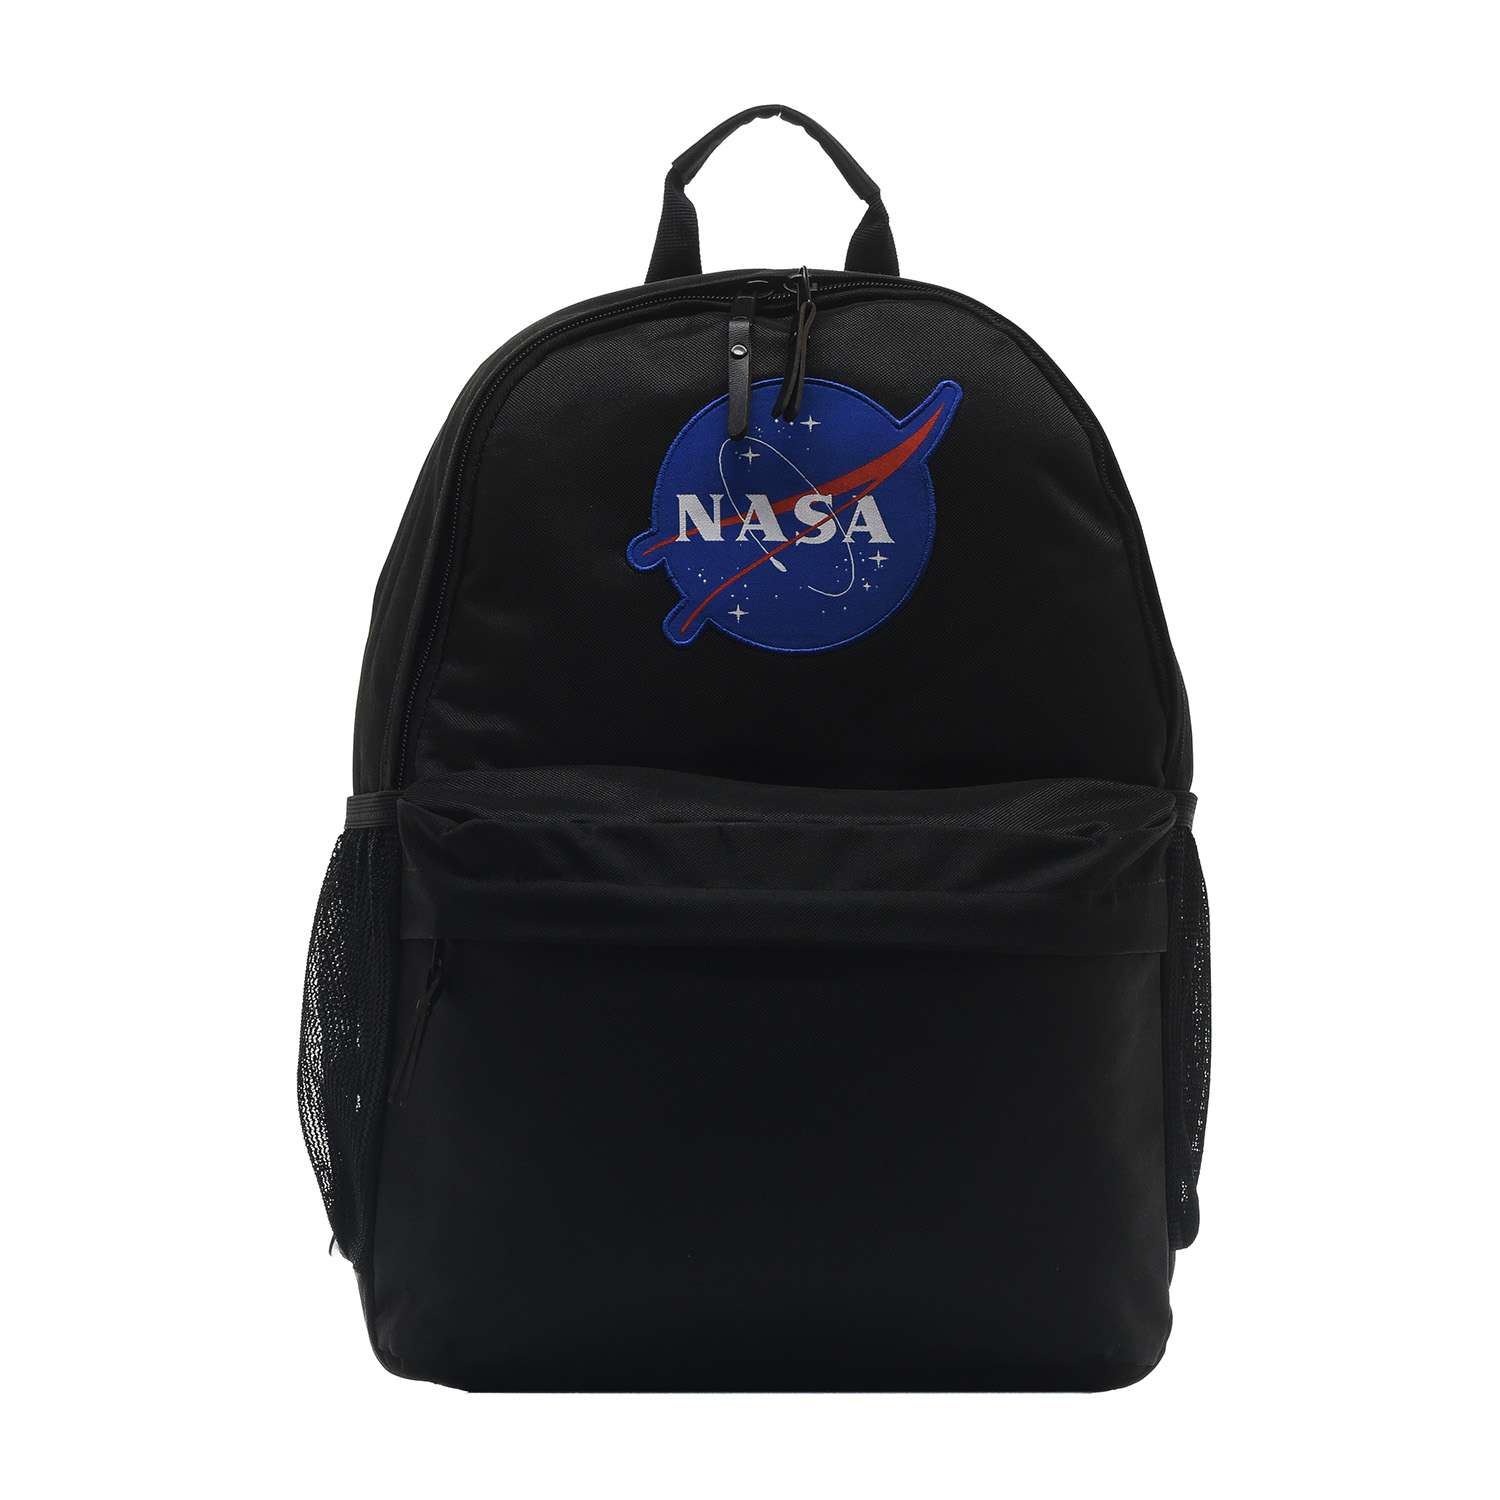 Рюкзак NASA 086109005-BMA-17 - фото 1